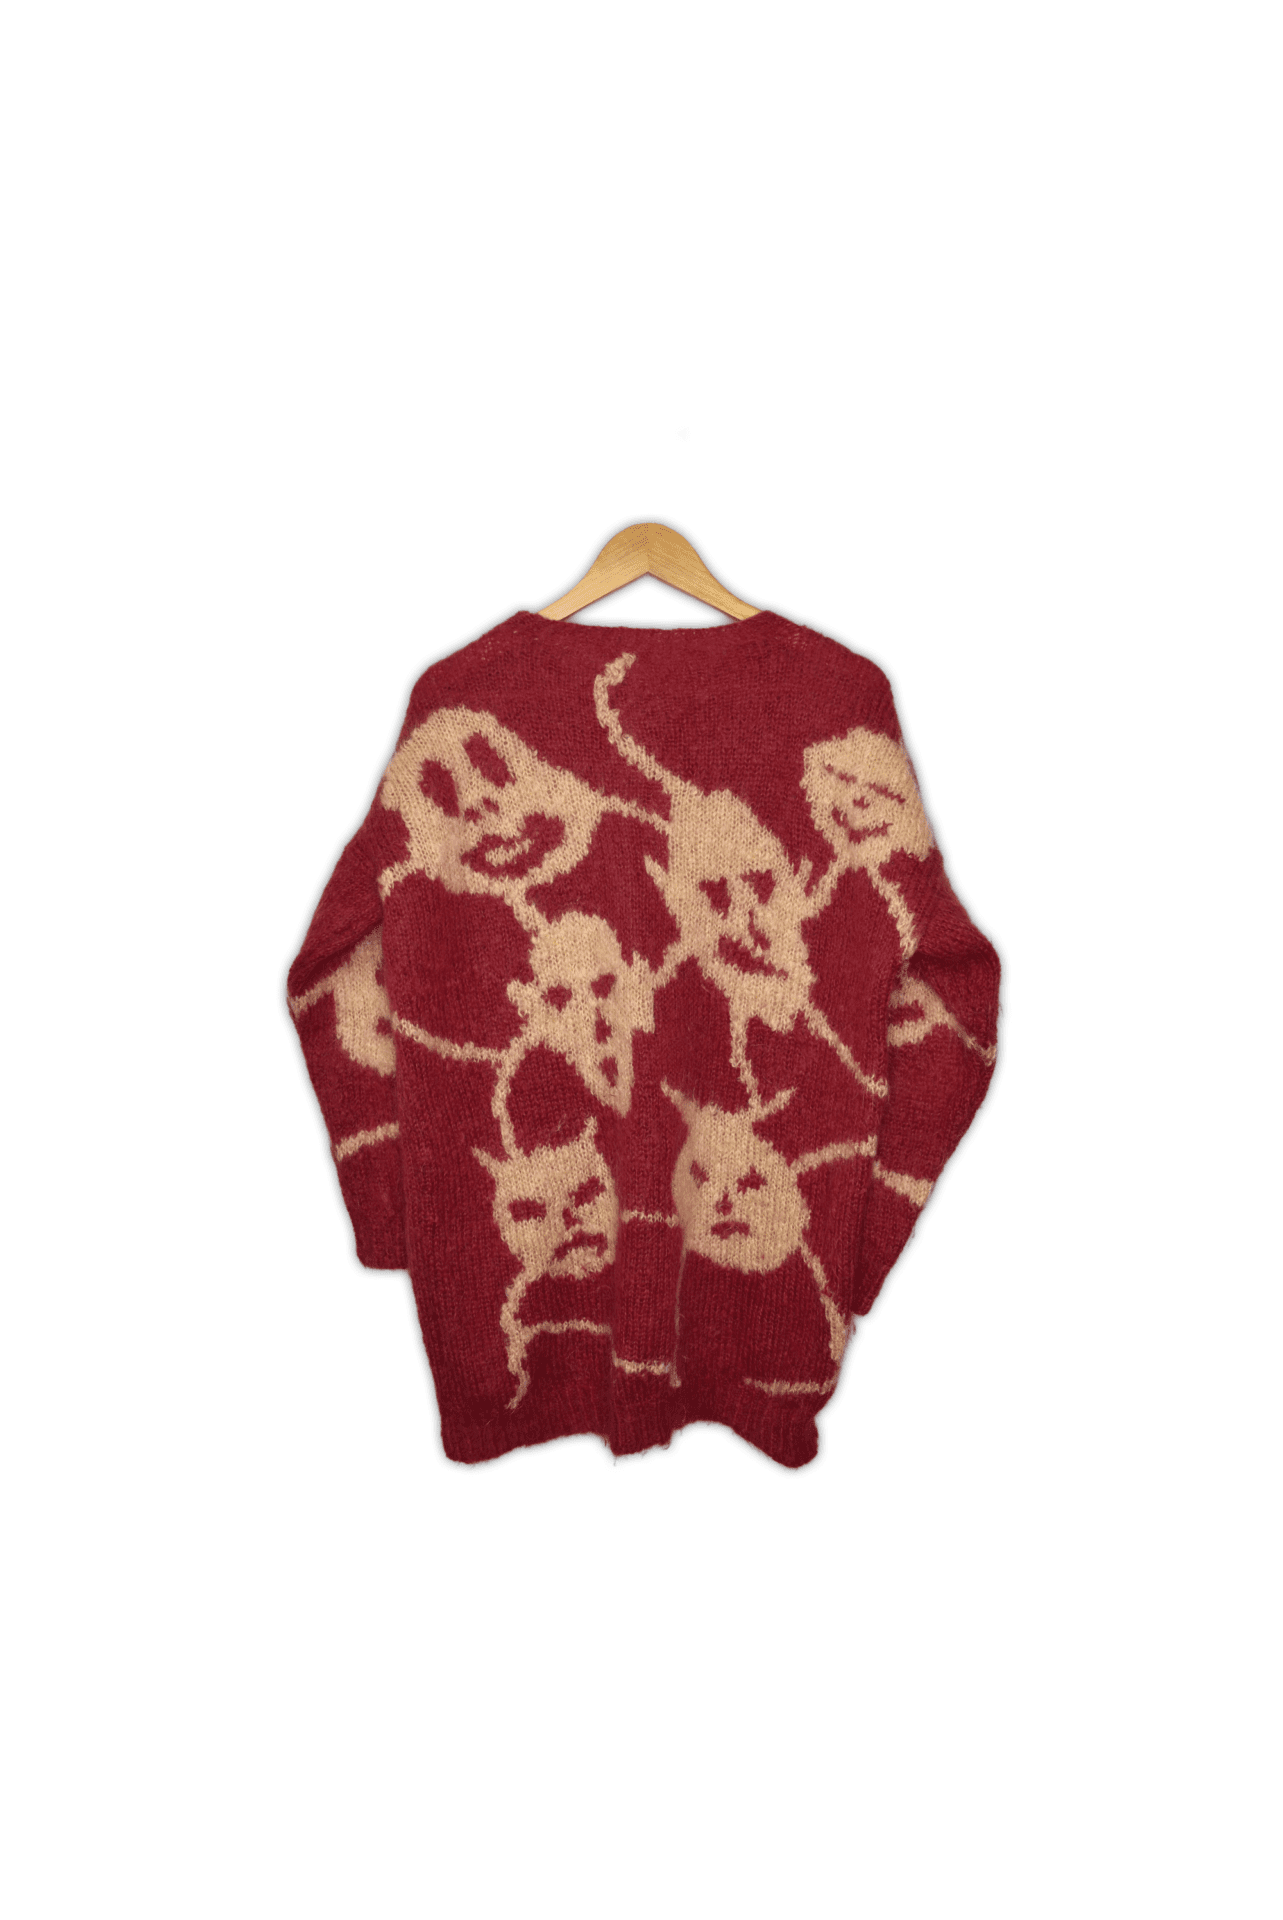 goblin_knit_sweater